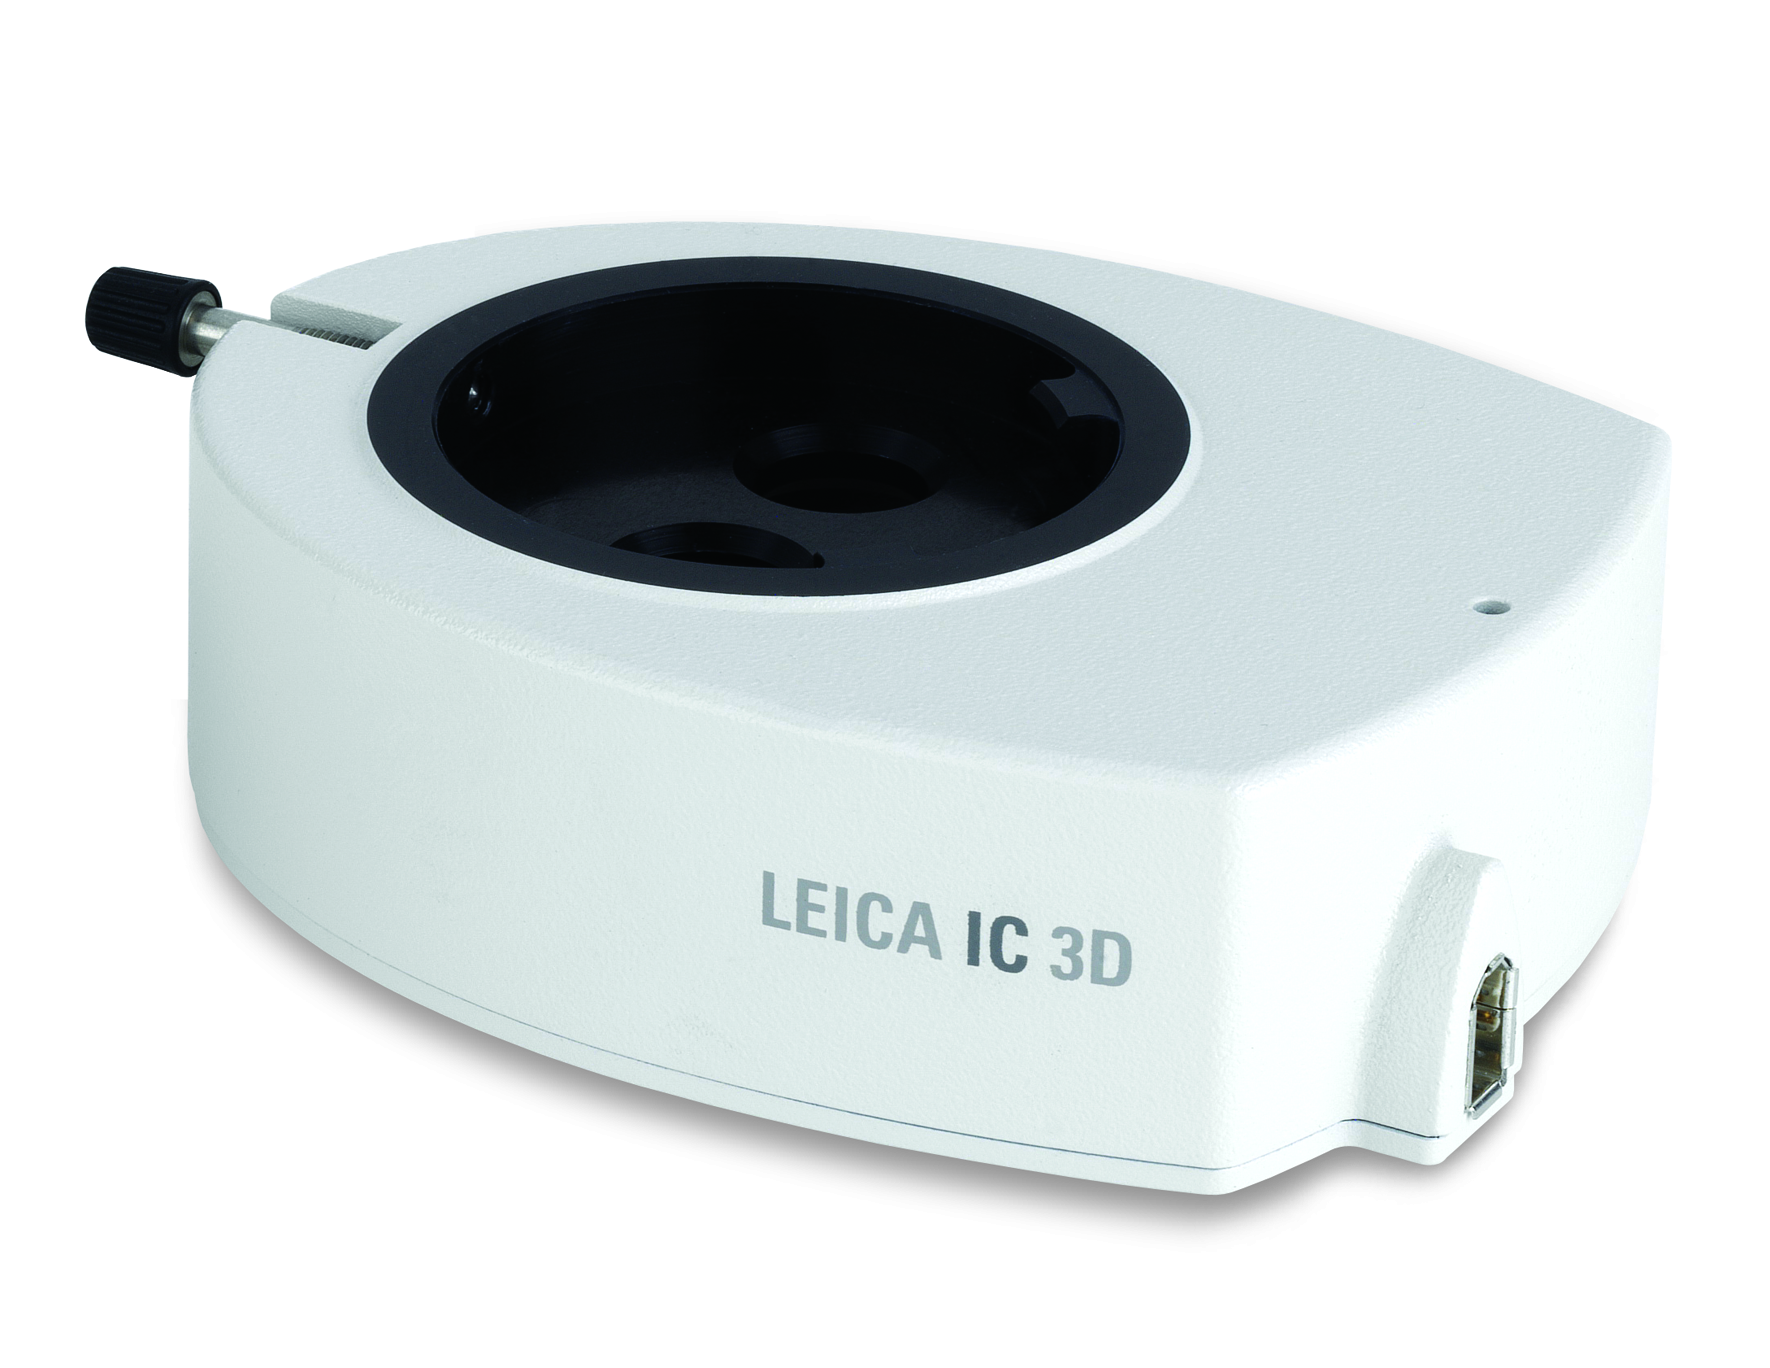 L'image 3D d'échantillons microscopiques observés via les oculaires et affichés à l'écran est à portée de main de l'utilisateur avec le Leica IC 3D.